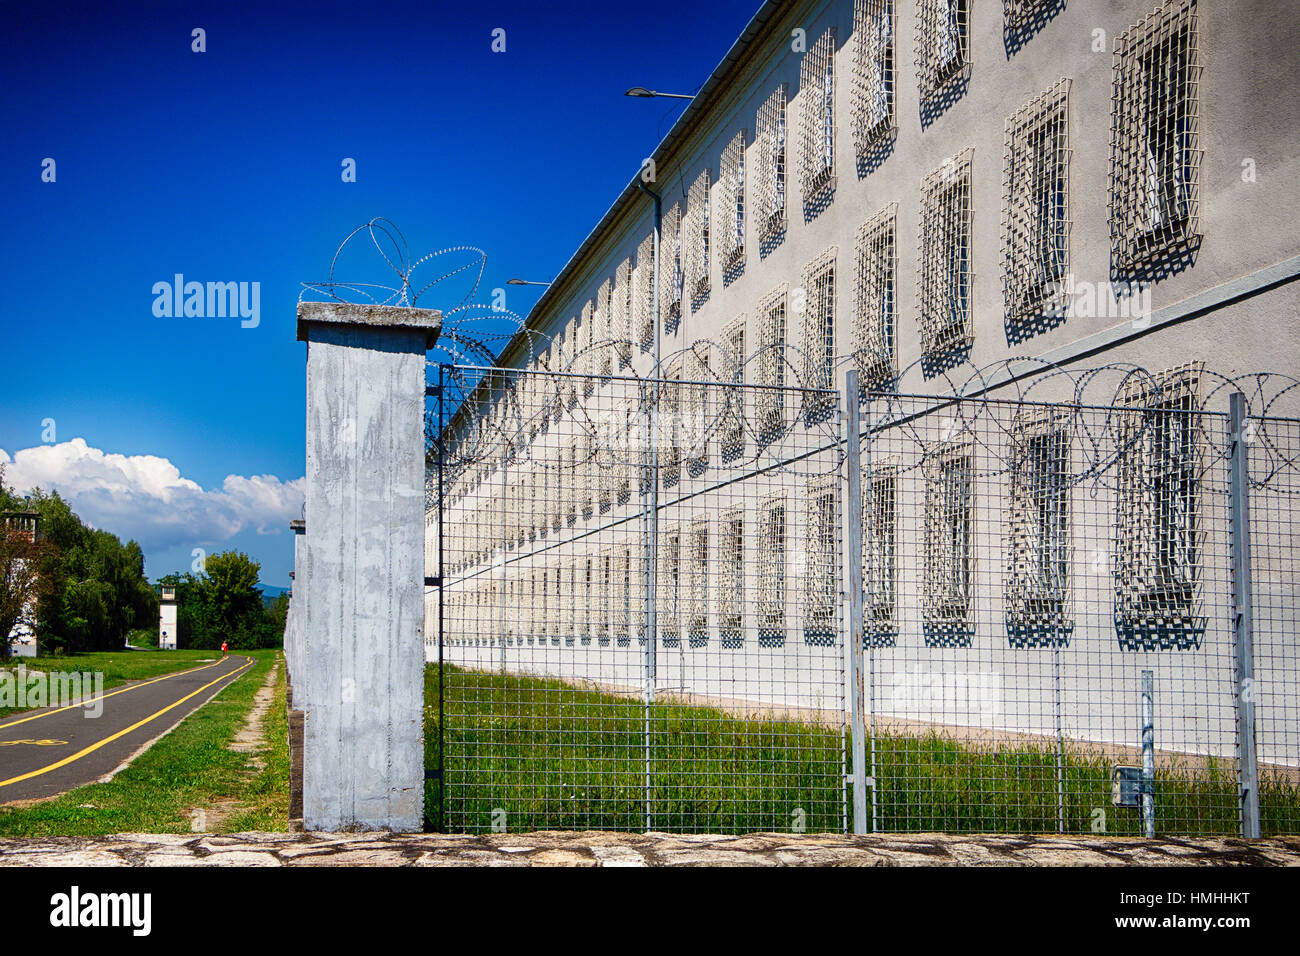 Alambre de púas, la Penitenciaria Estatal, Vac, el condado Pest, Hungría Foto de stock